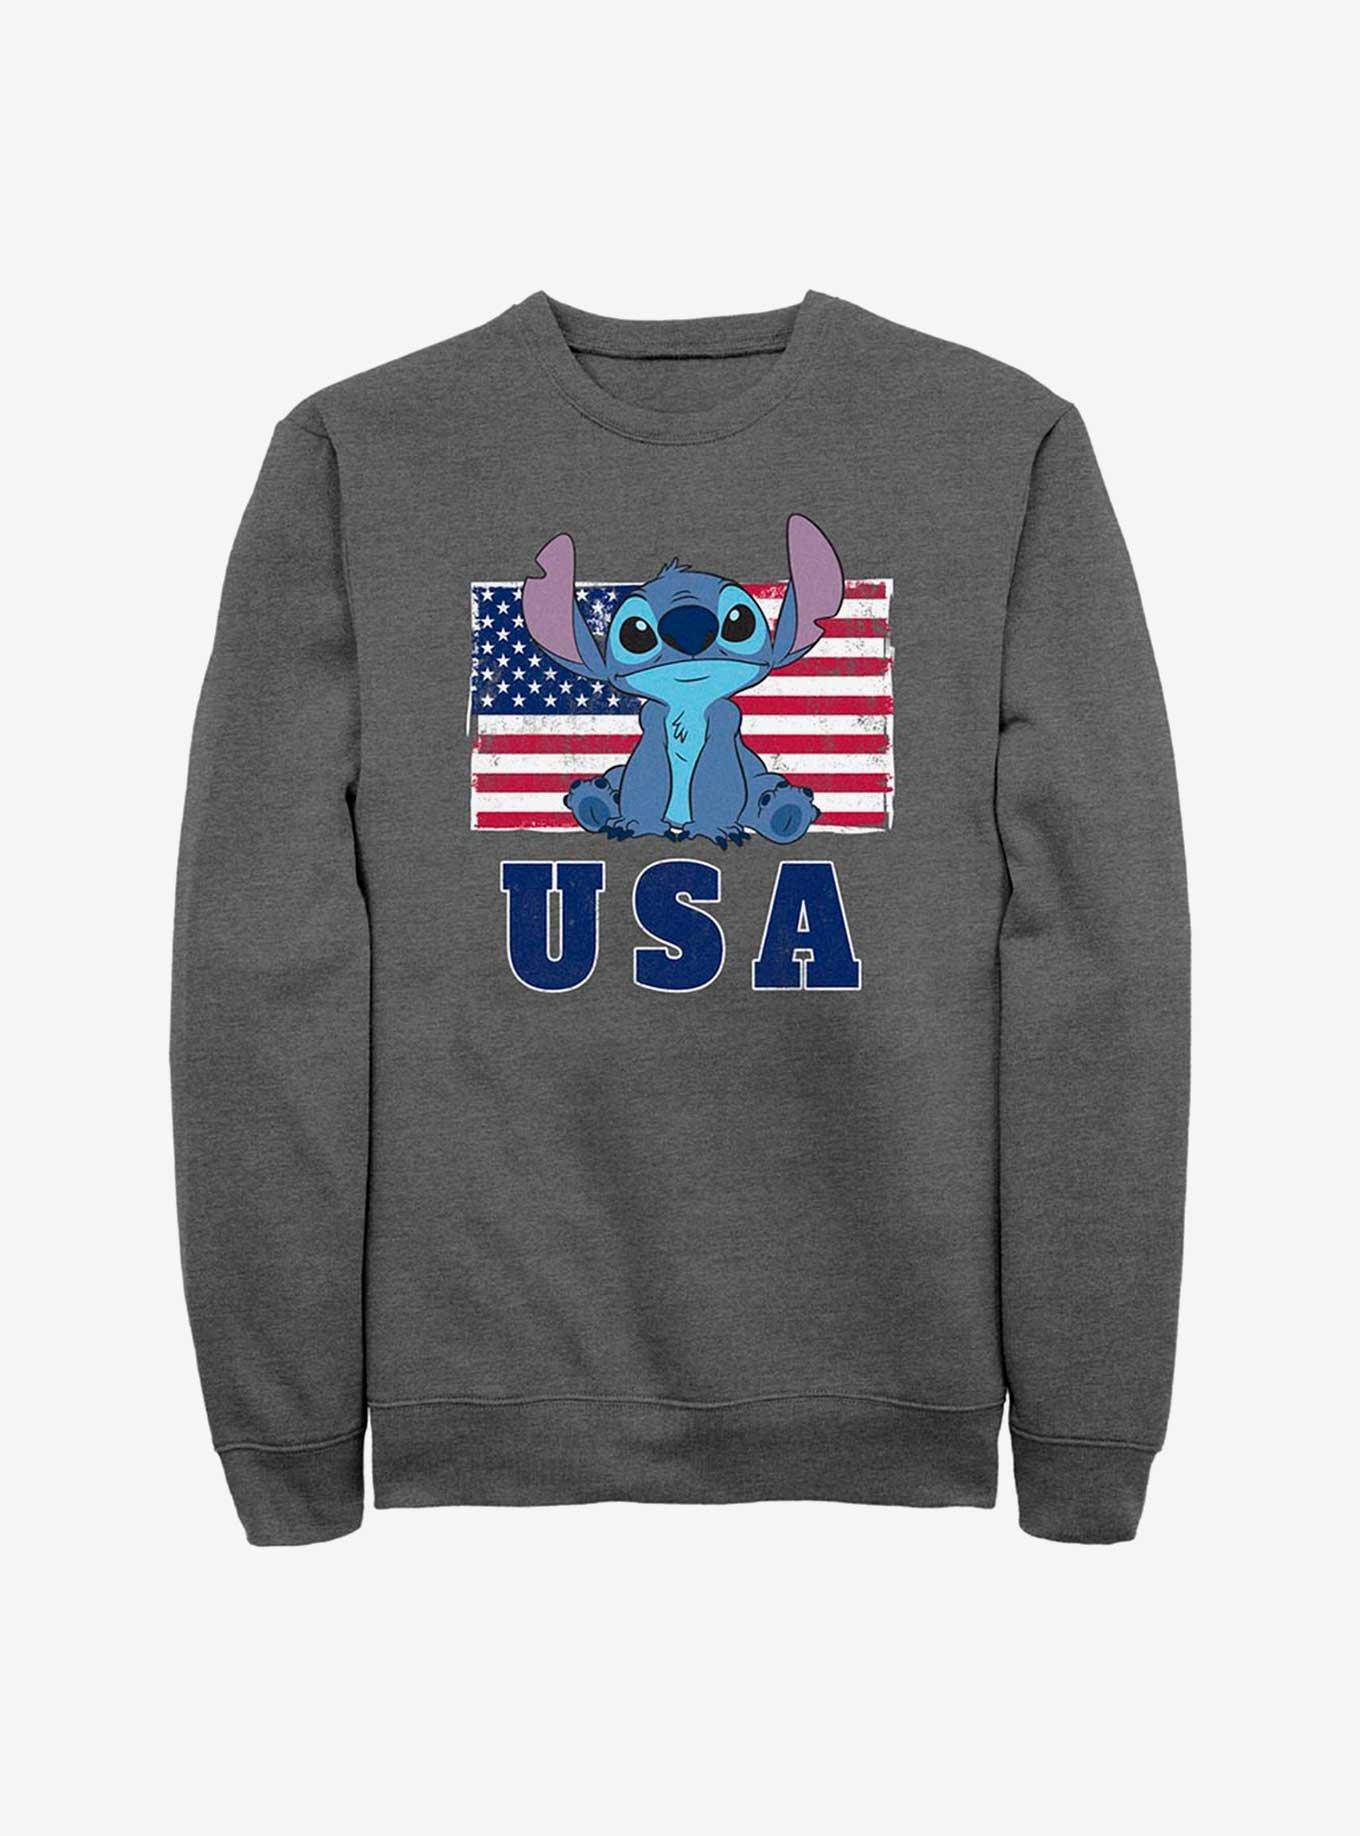 Disney Lilo & Stitch America Sweatshirt, CHAR HTR, hi-res